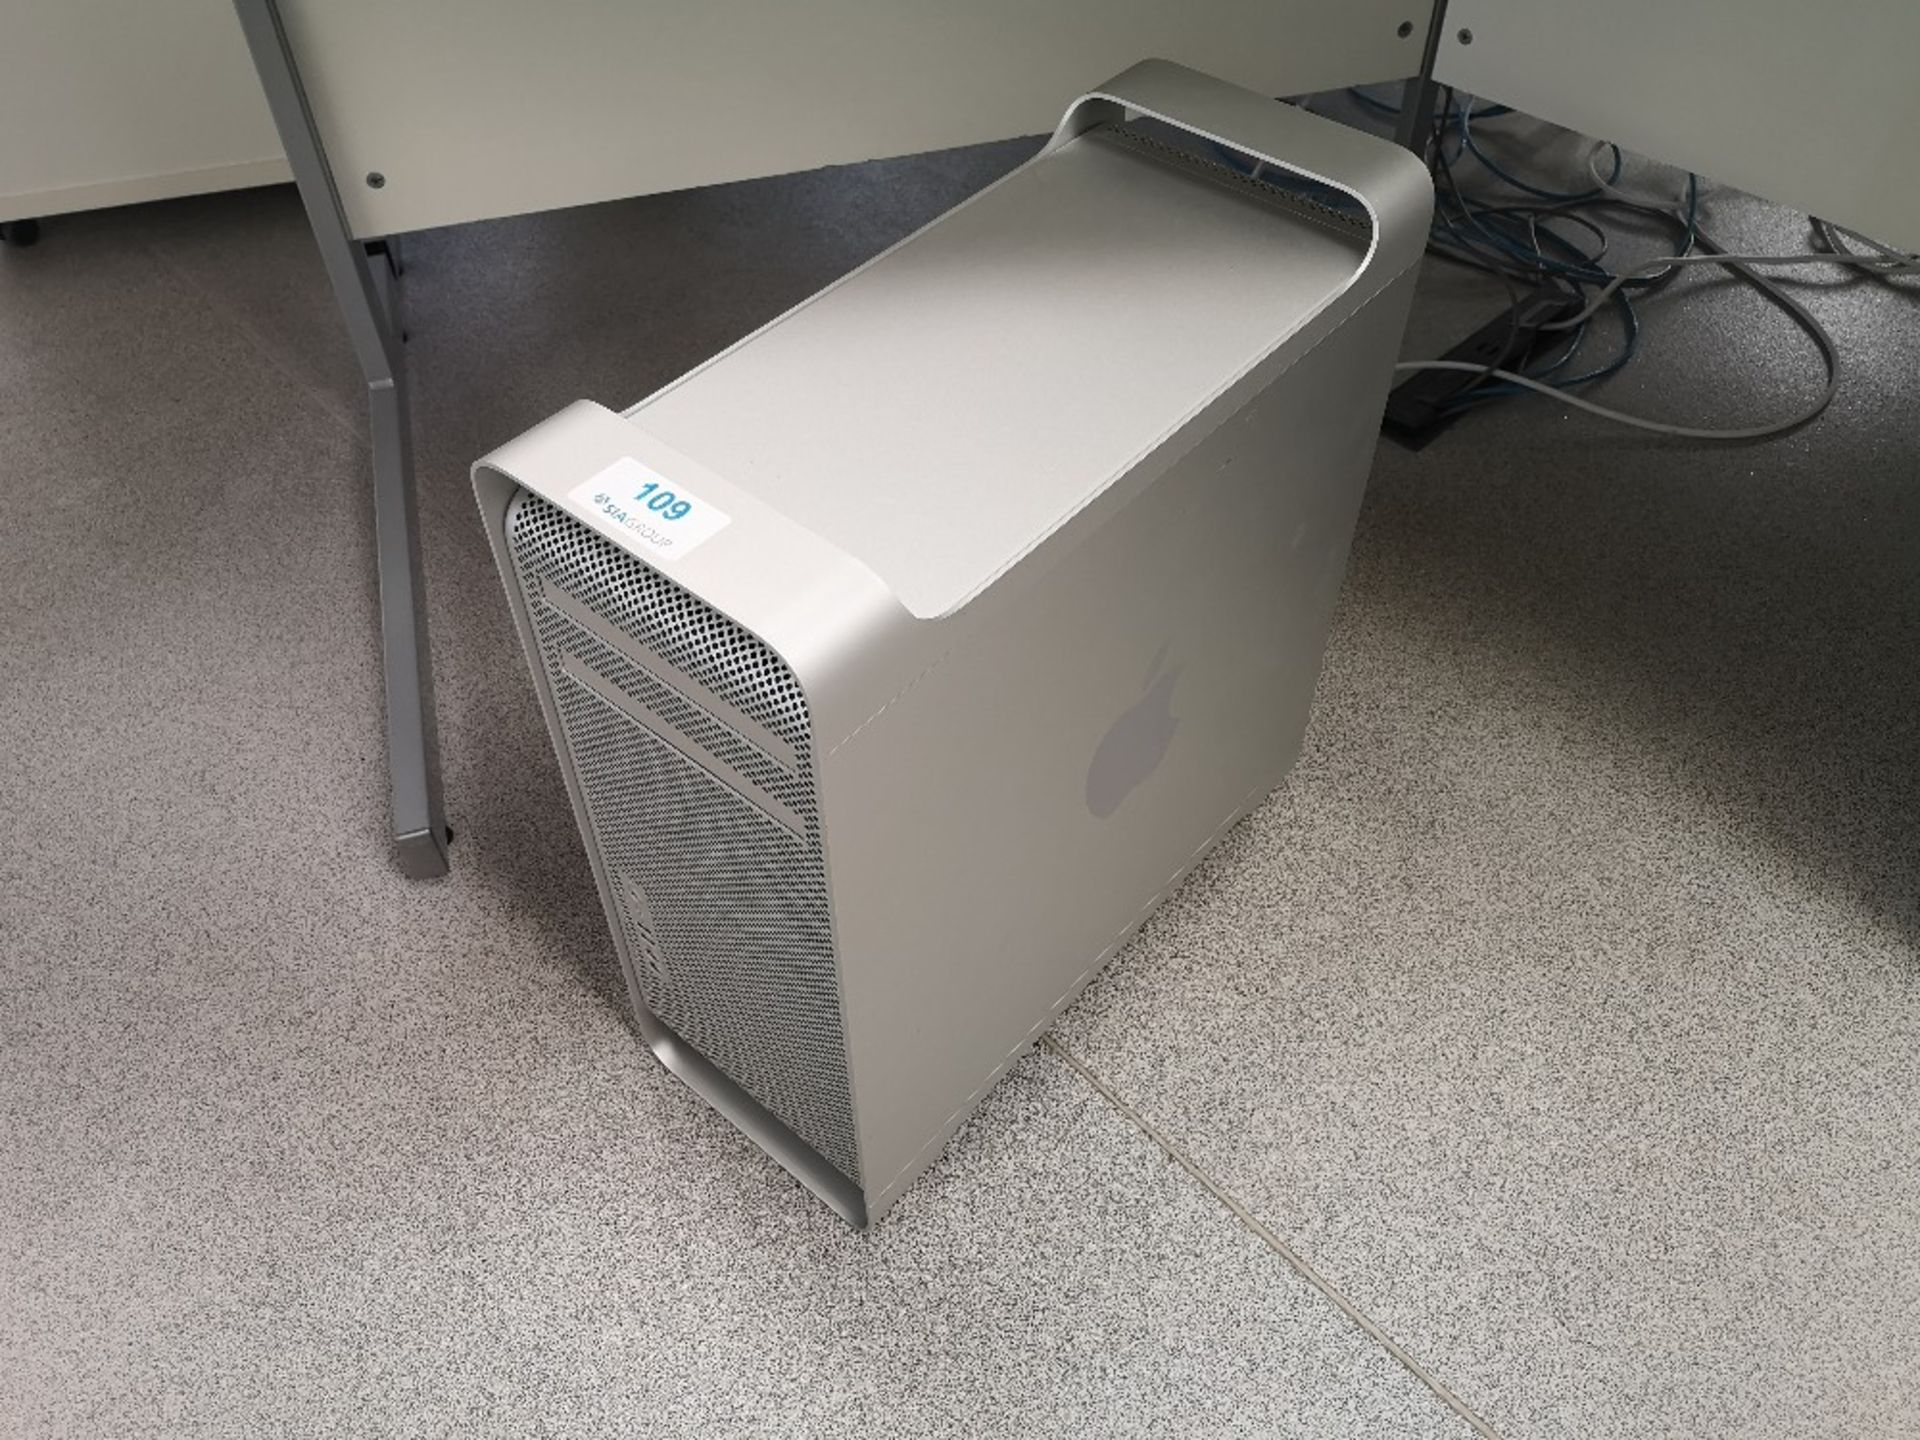 Apple Mac Pro A1289, 1 TB Hard drive